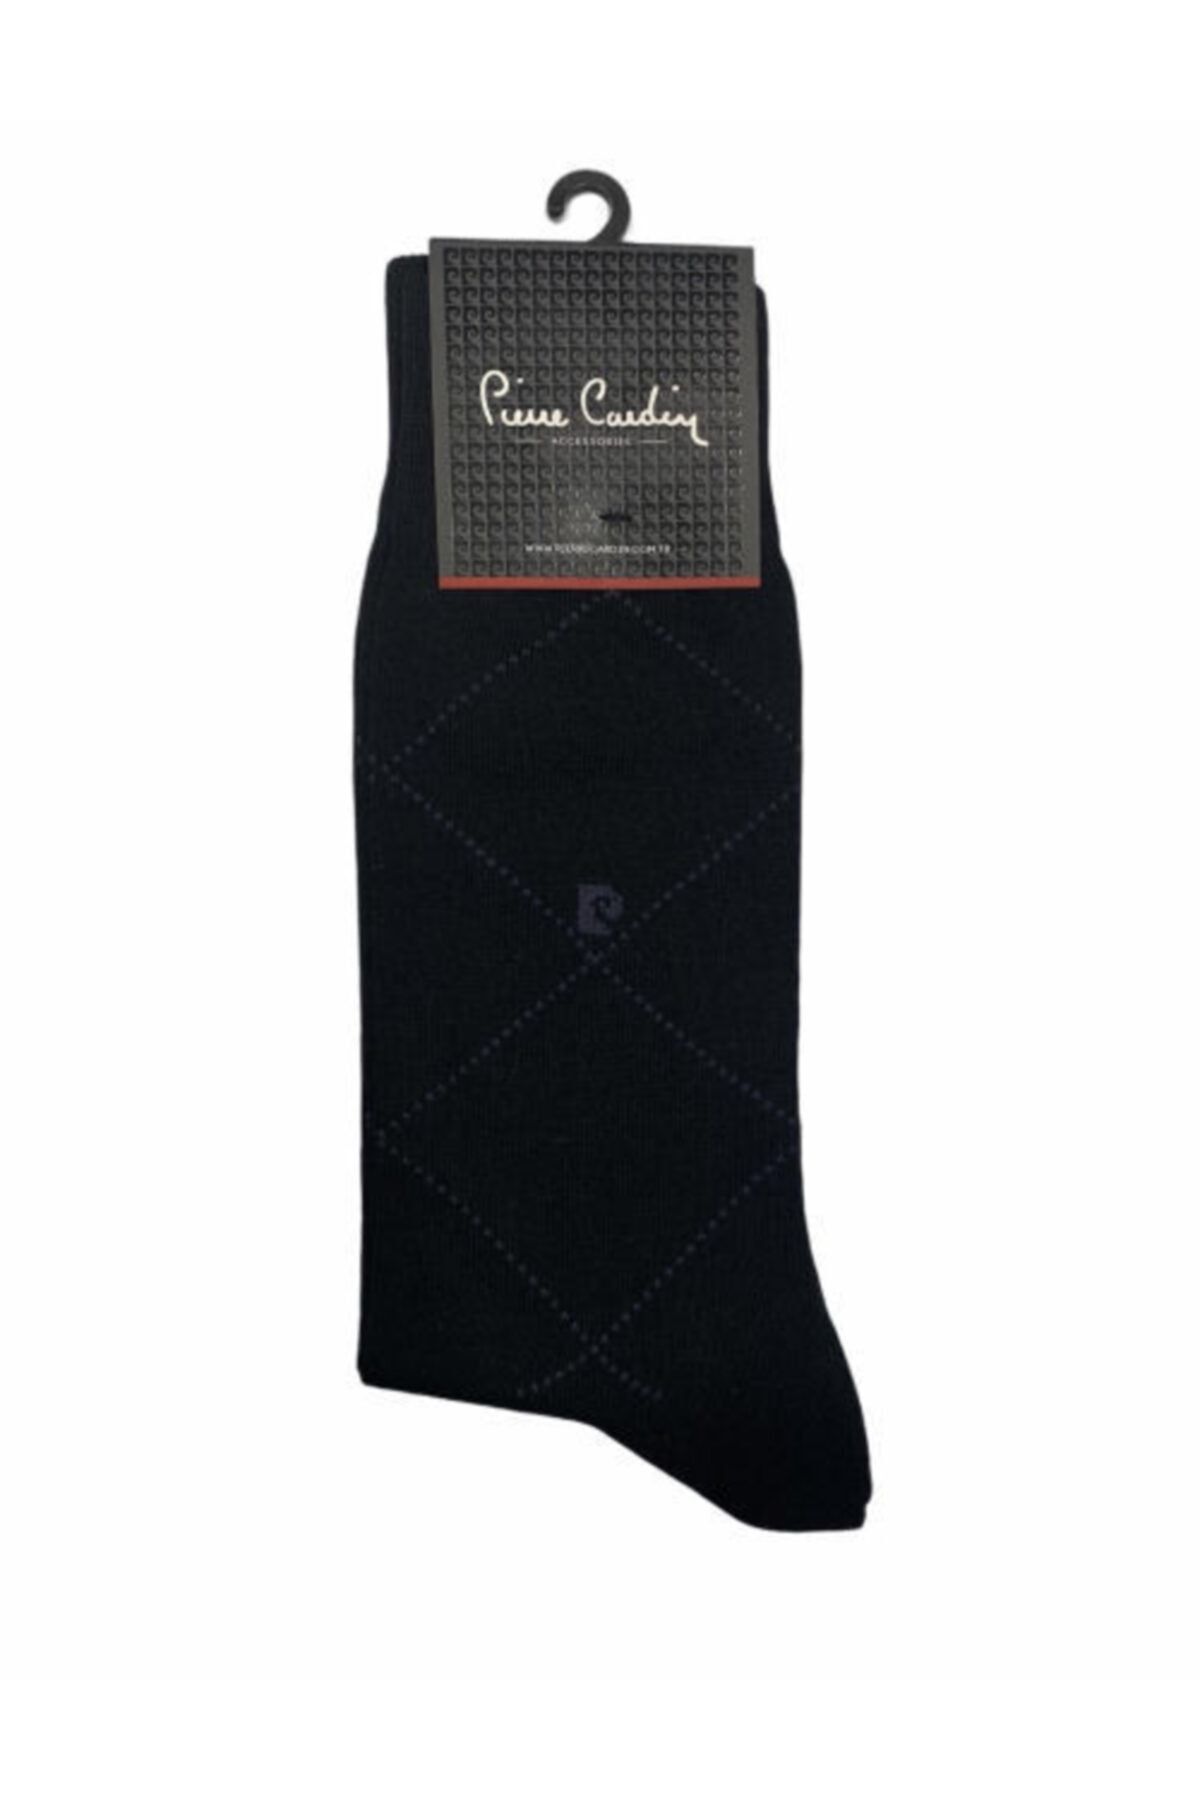 Pierre Cardin 6' Lı Pamuk Çorap